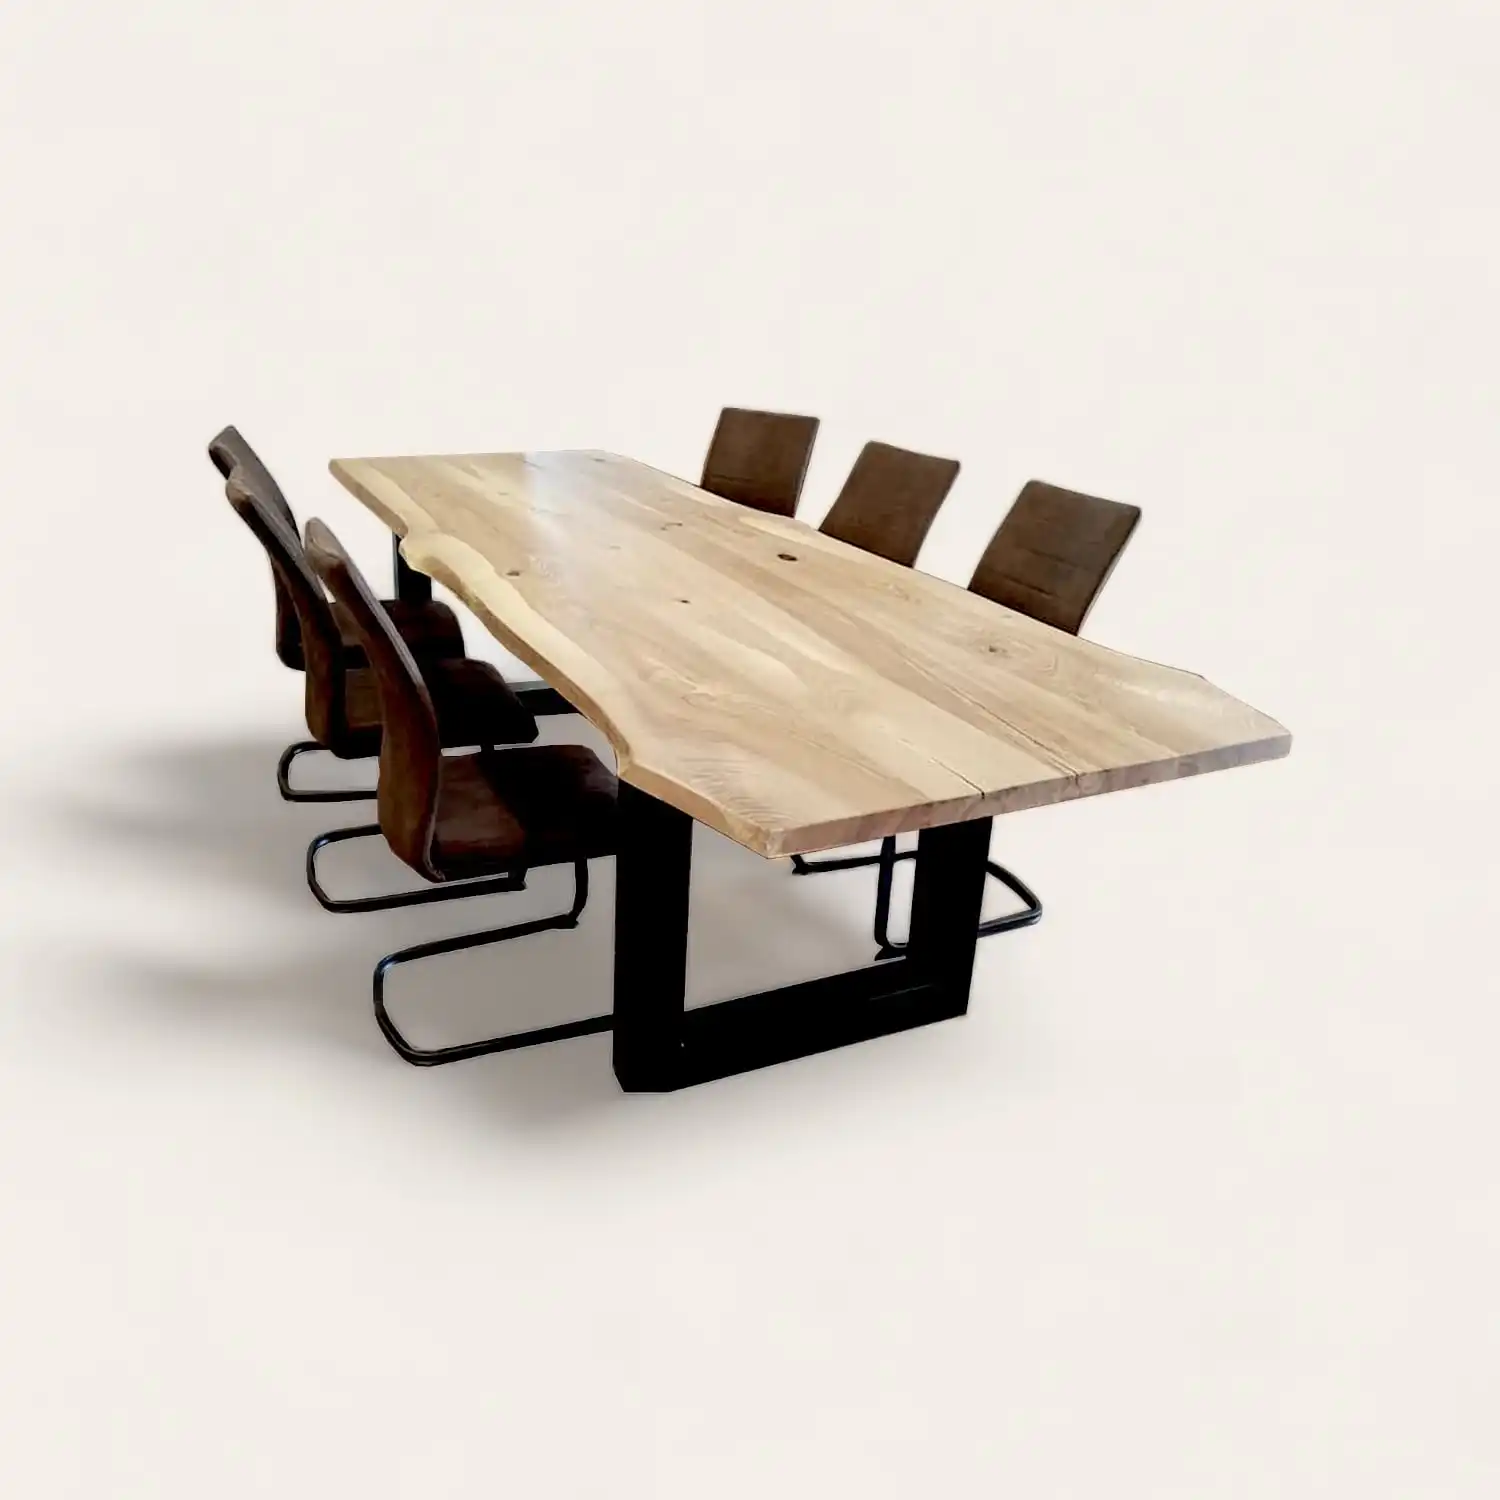  Une table à manger rustique avec quatre chaises et une grande dalle de vieux bois. 